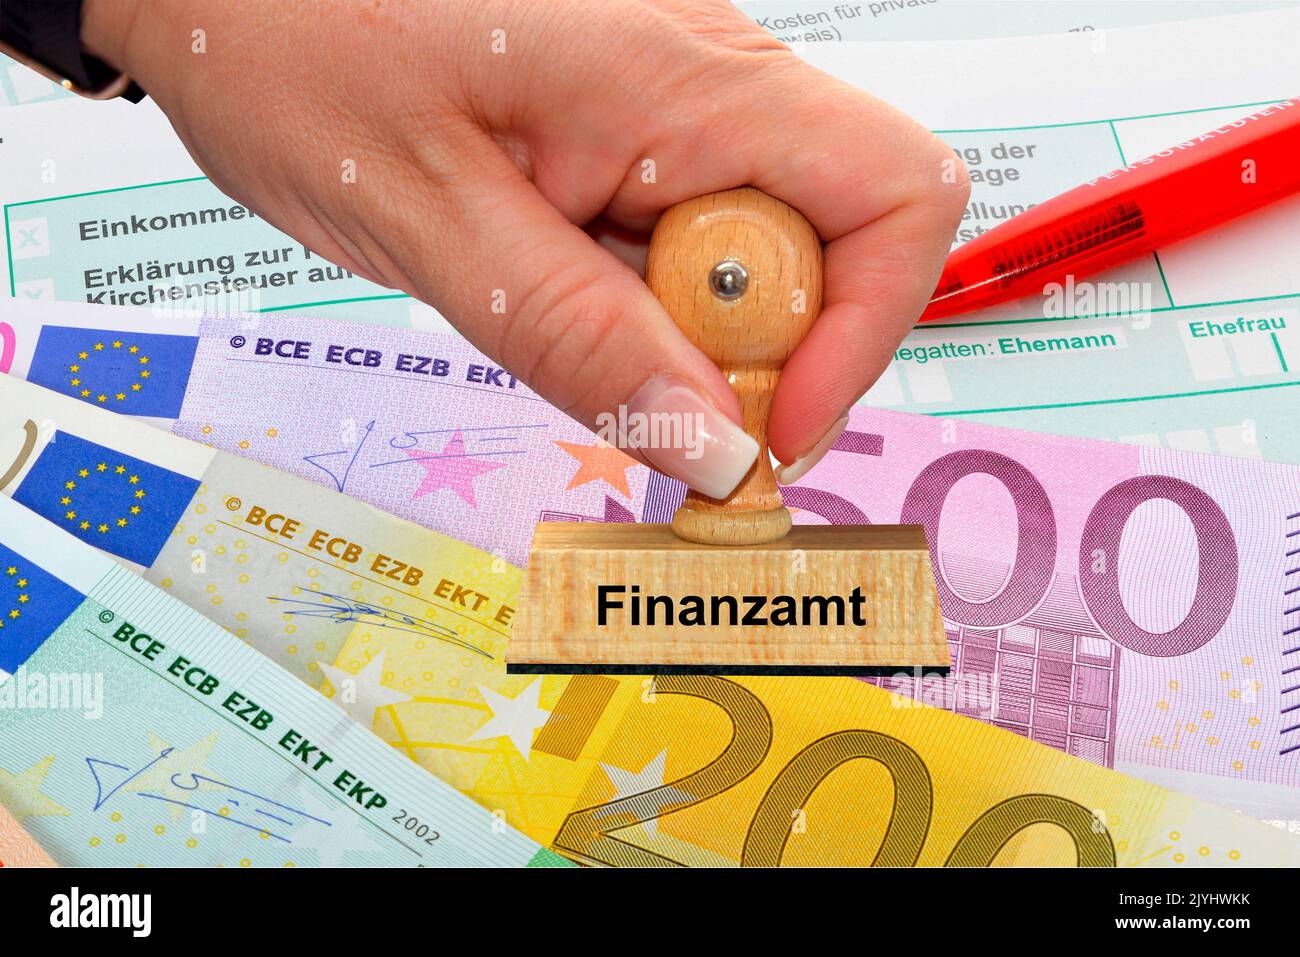 Main de femme avec cachet, Finanzamt, bureau de fiscalité, Euro facture un crayon dans le backgound, Allemagne Banque D'Images